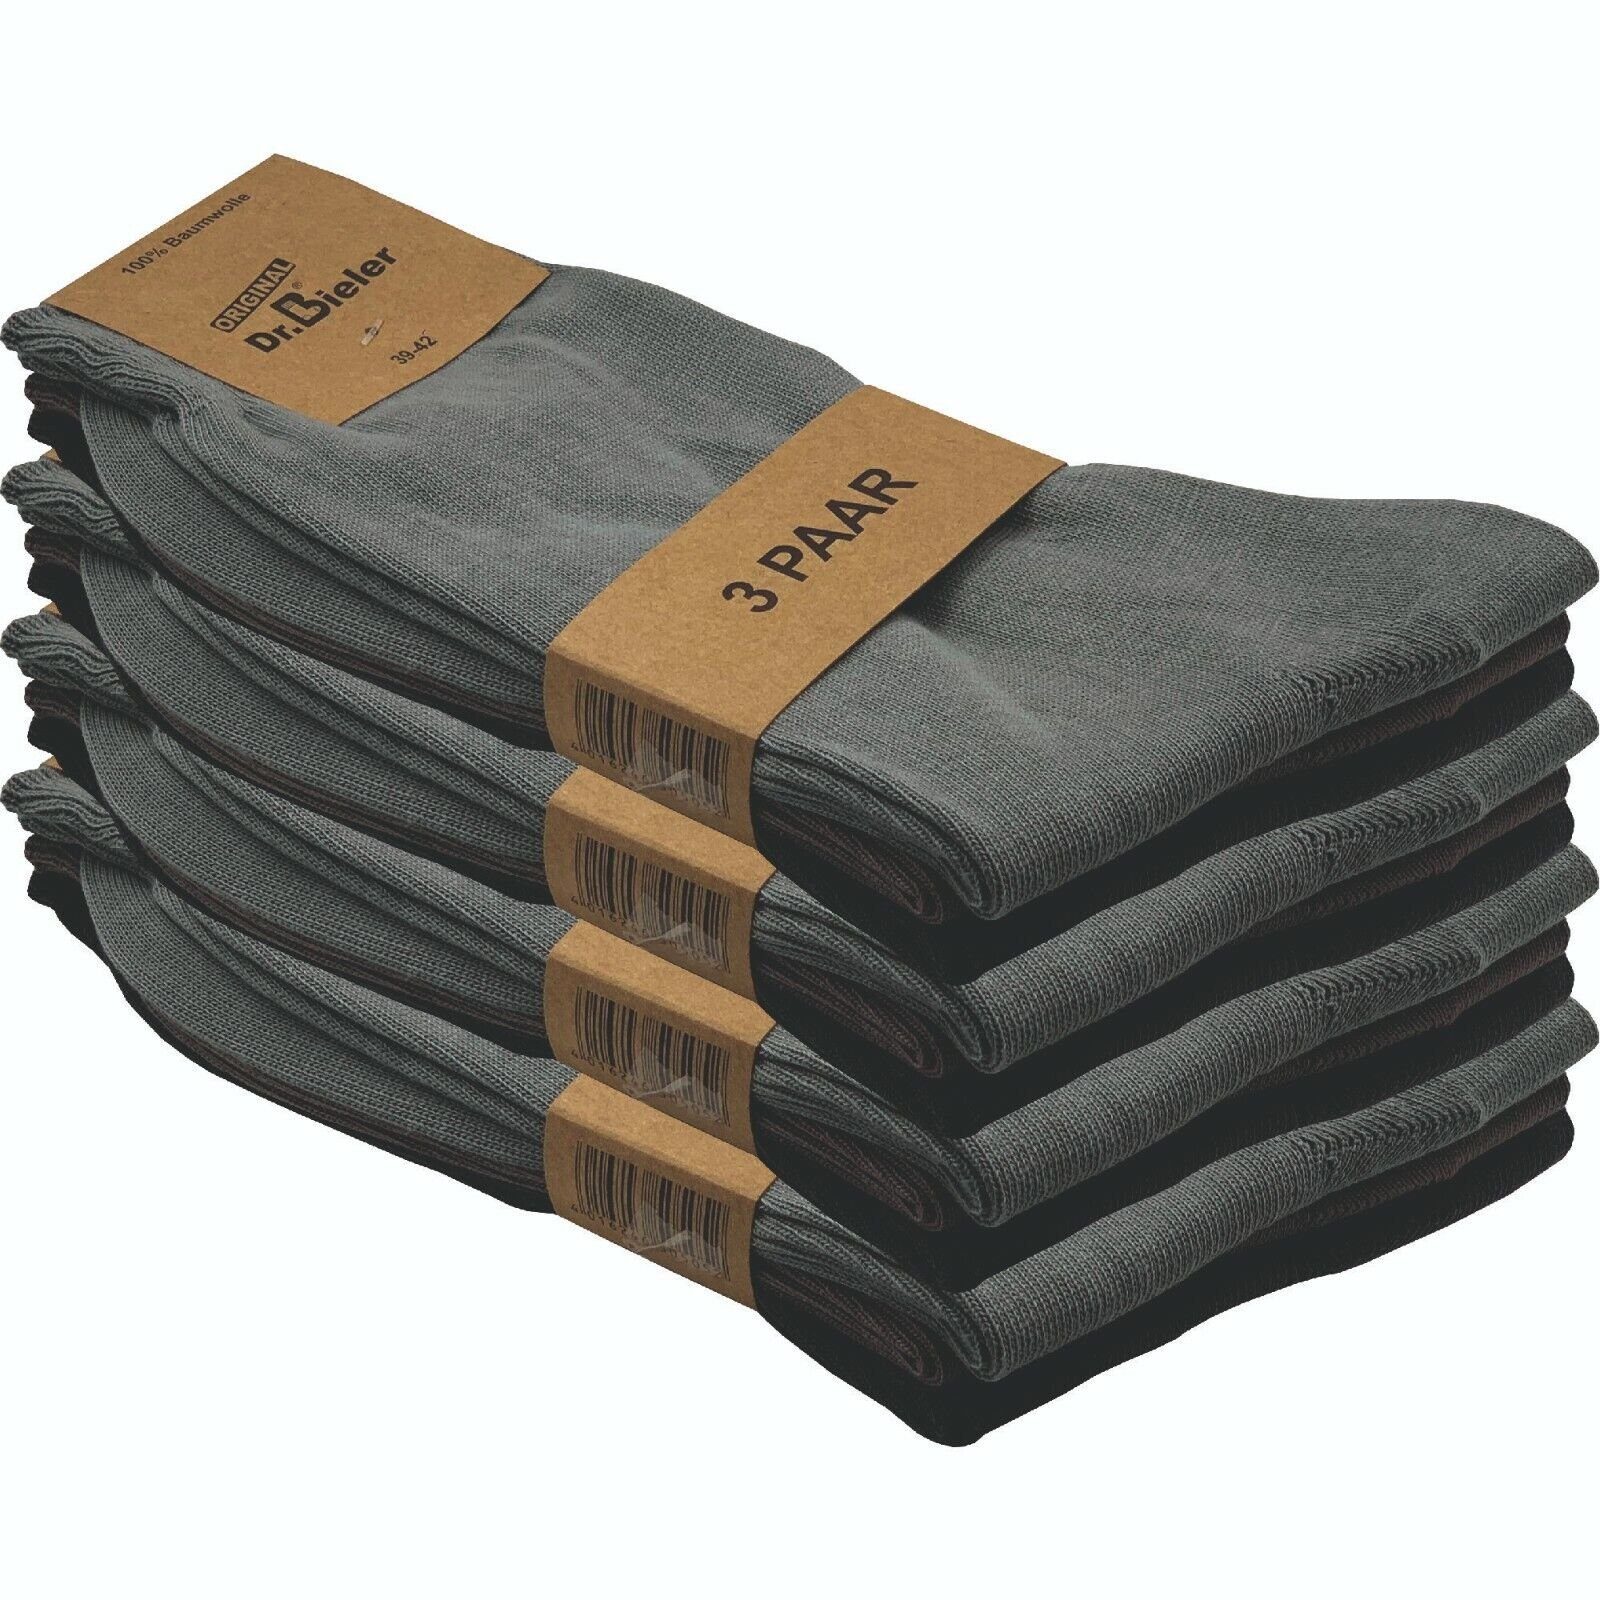 GAWILO Basicsocken für Herren aus 100% Baumwolle - ohne Gummi - ohne drückende Naht (12 Paar) in schwarz, weiß & blau - für Preisbewusste in ansprechender Qualität